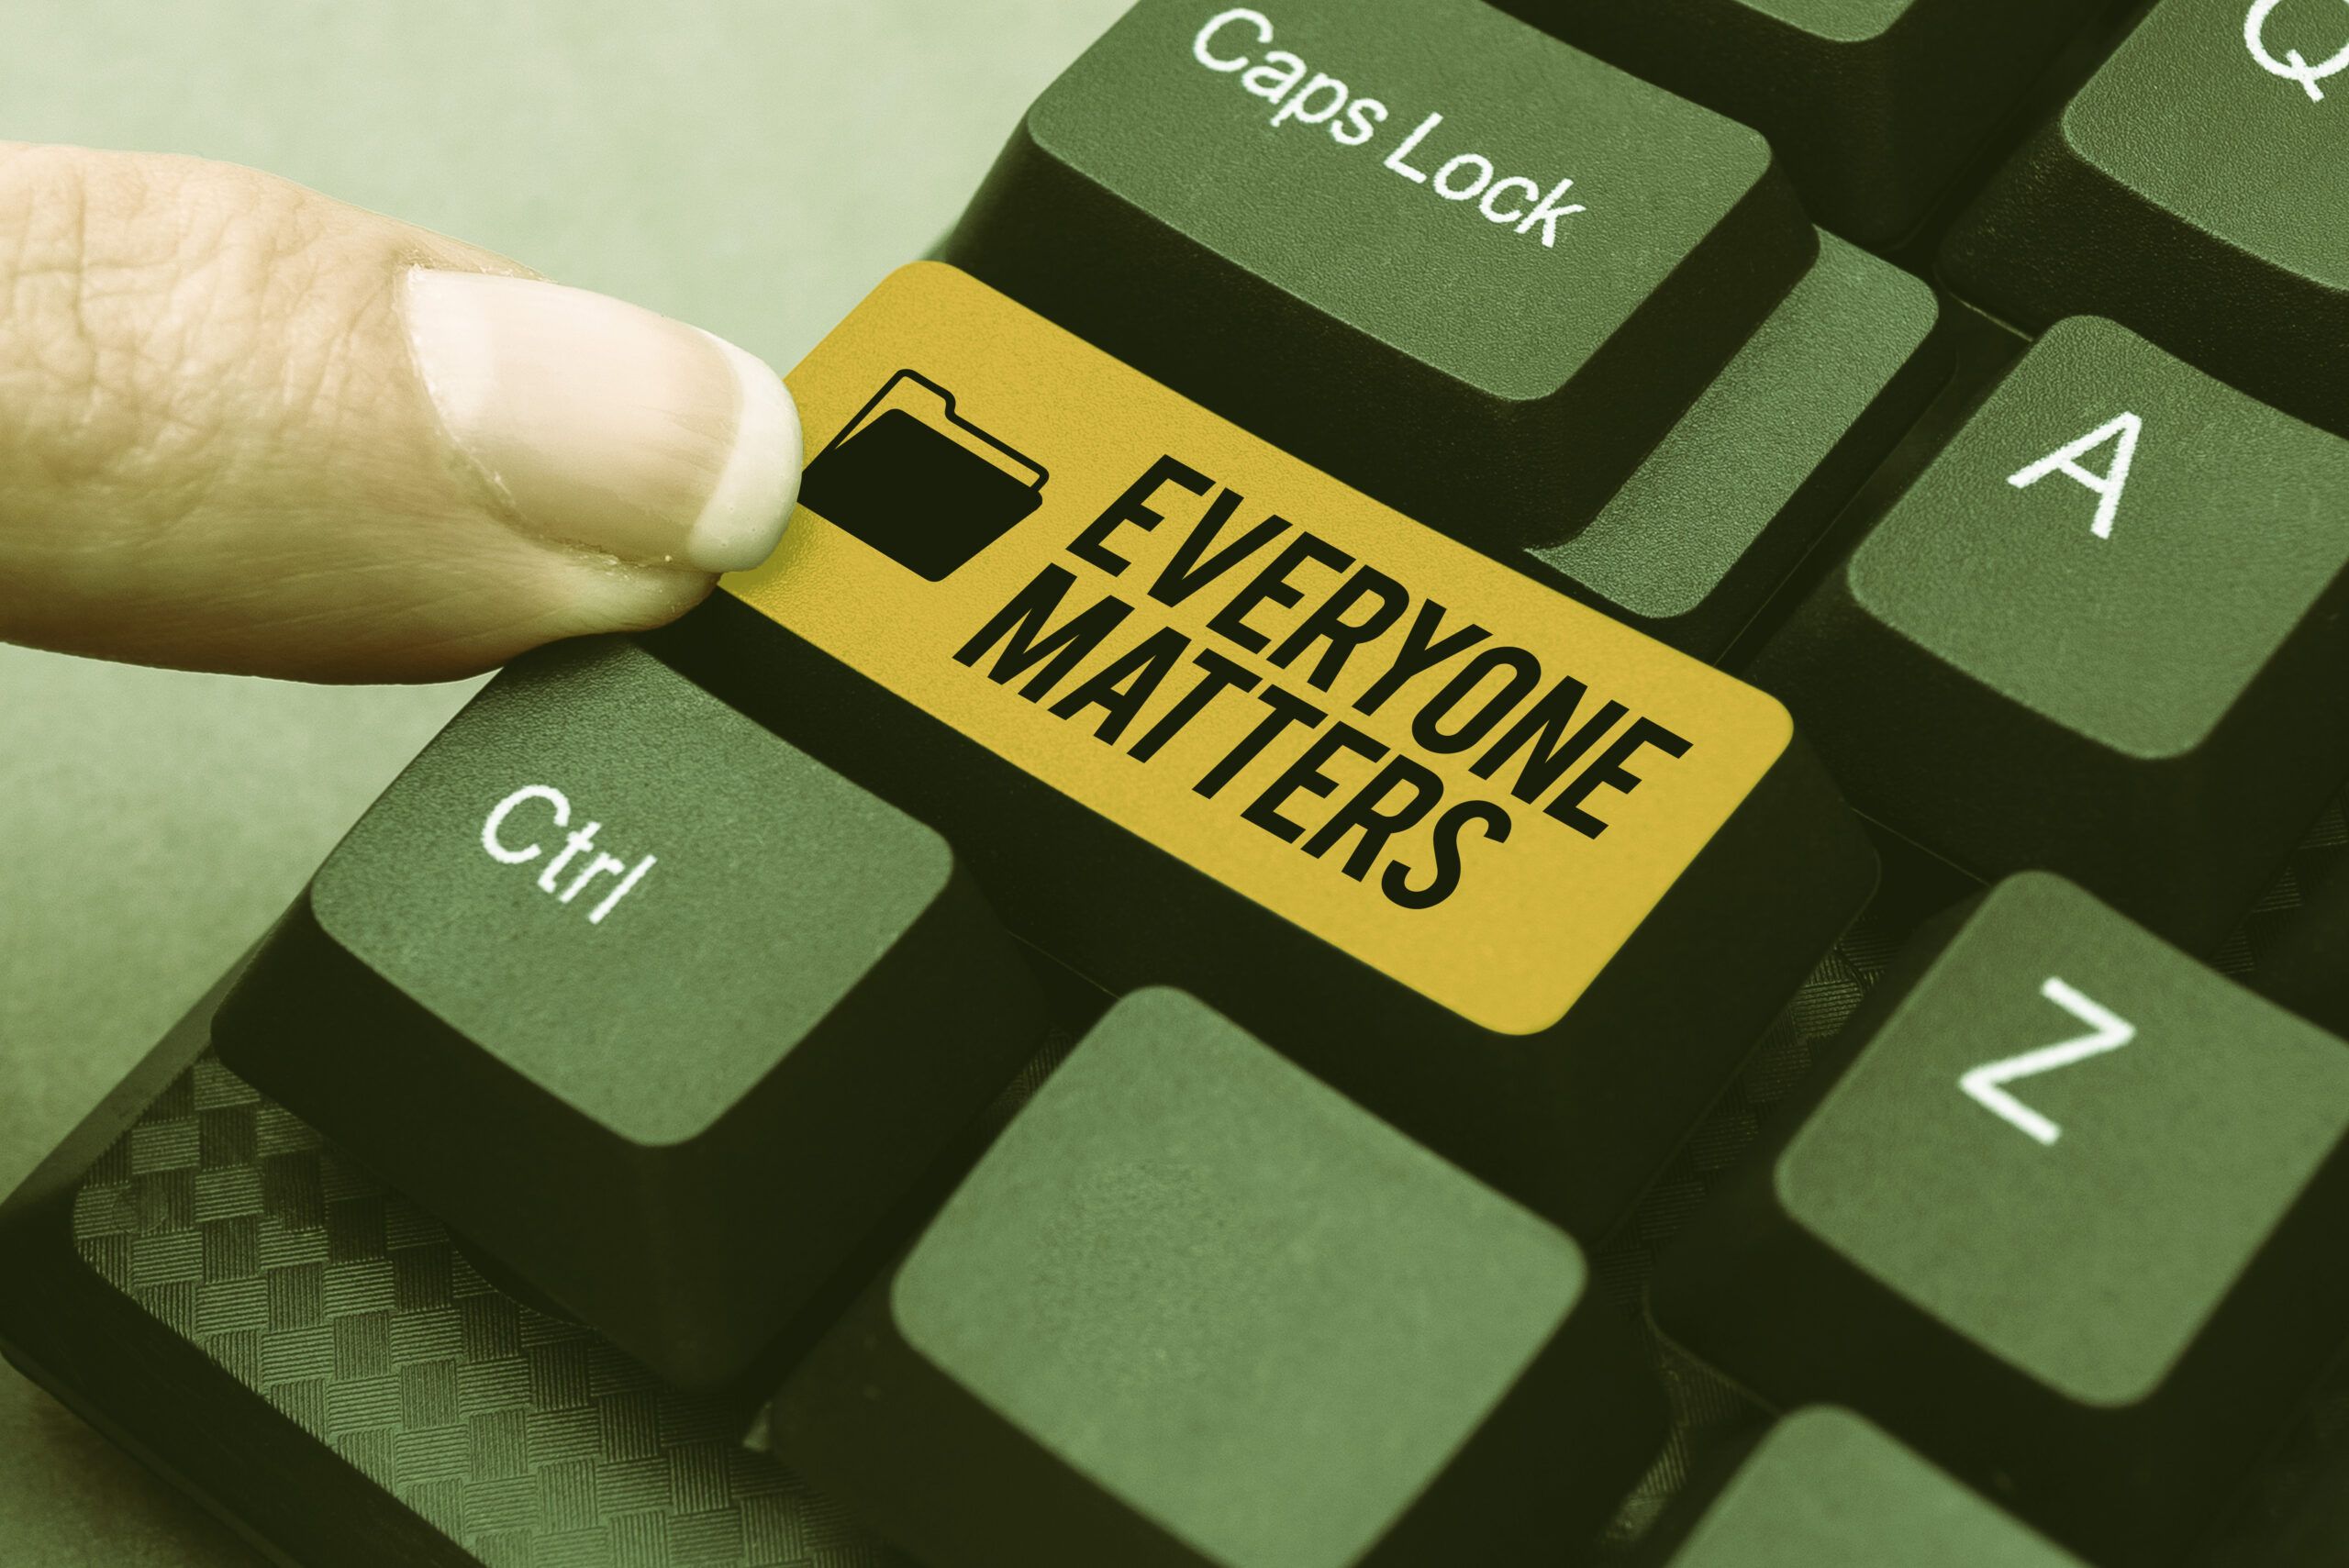 Everyone-Matters-Key-On-Computer-Keyboard